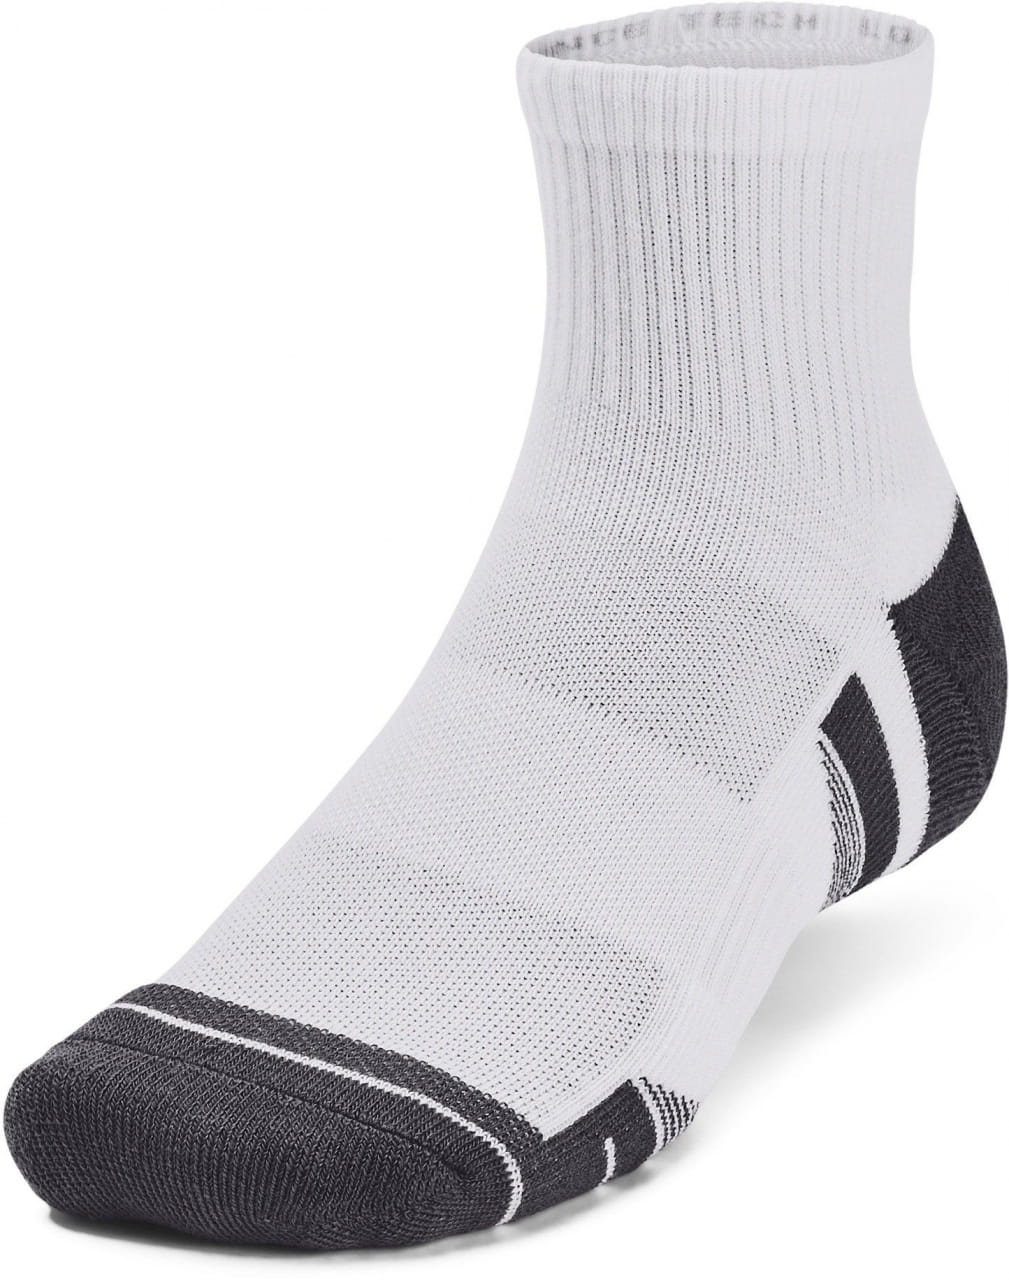 Unisex športové ponožky Under Armour Performance Tech 3pk Qtr-WHT